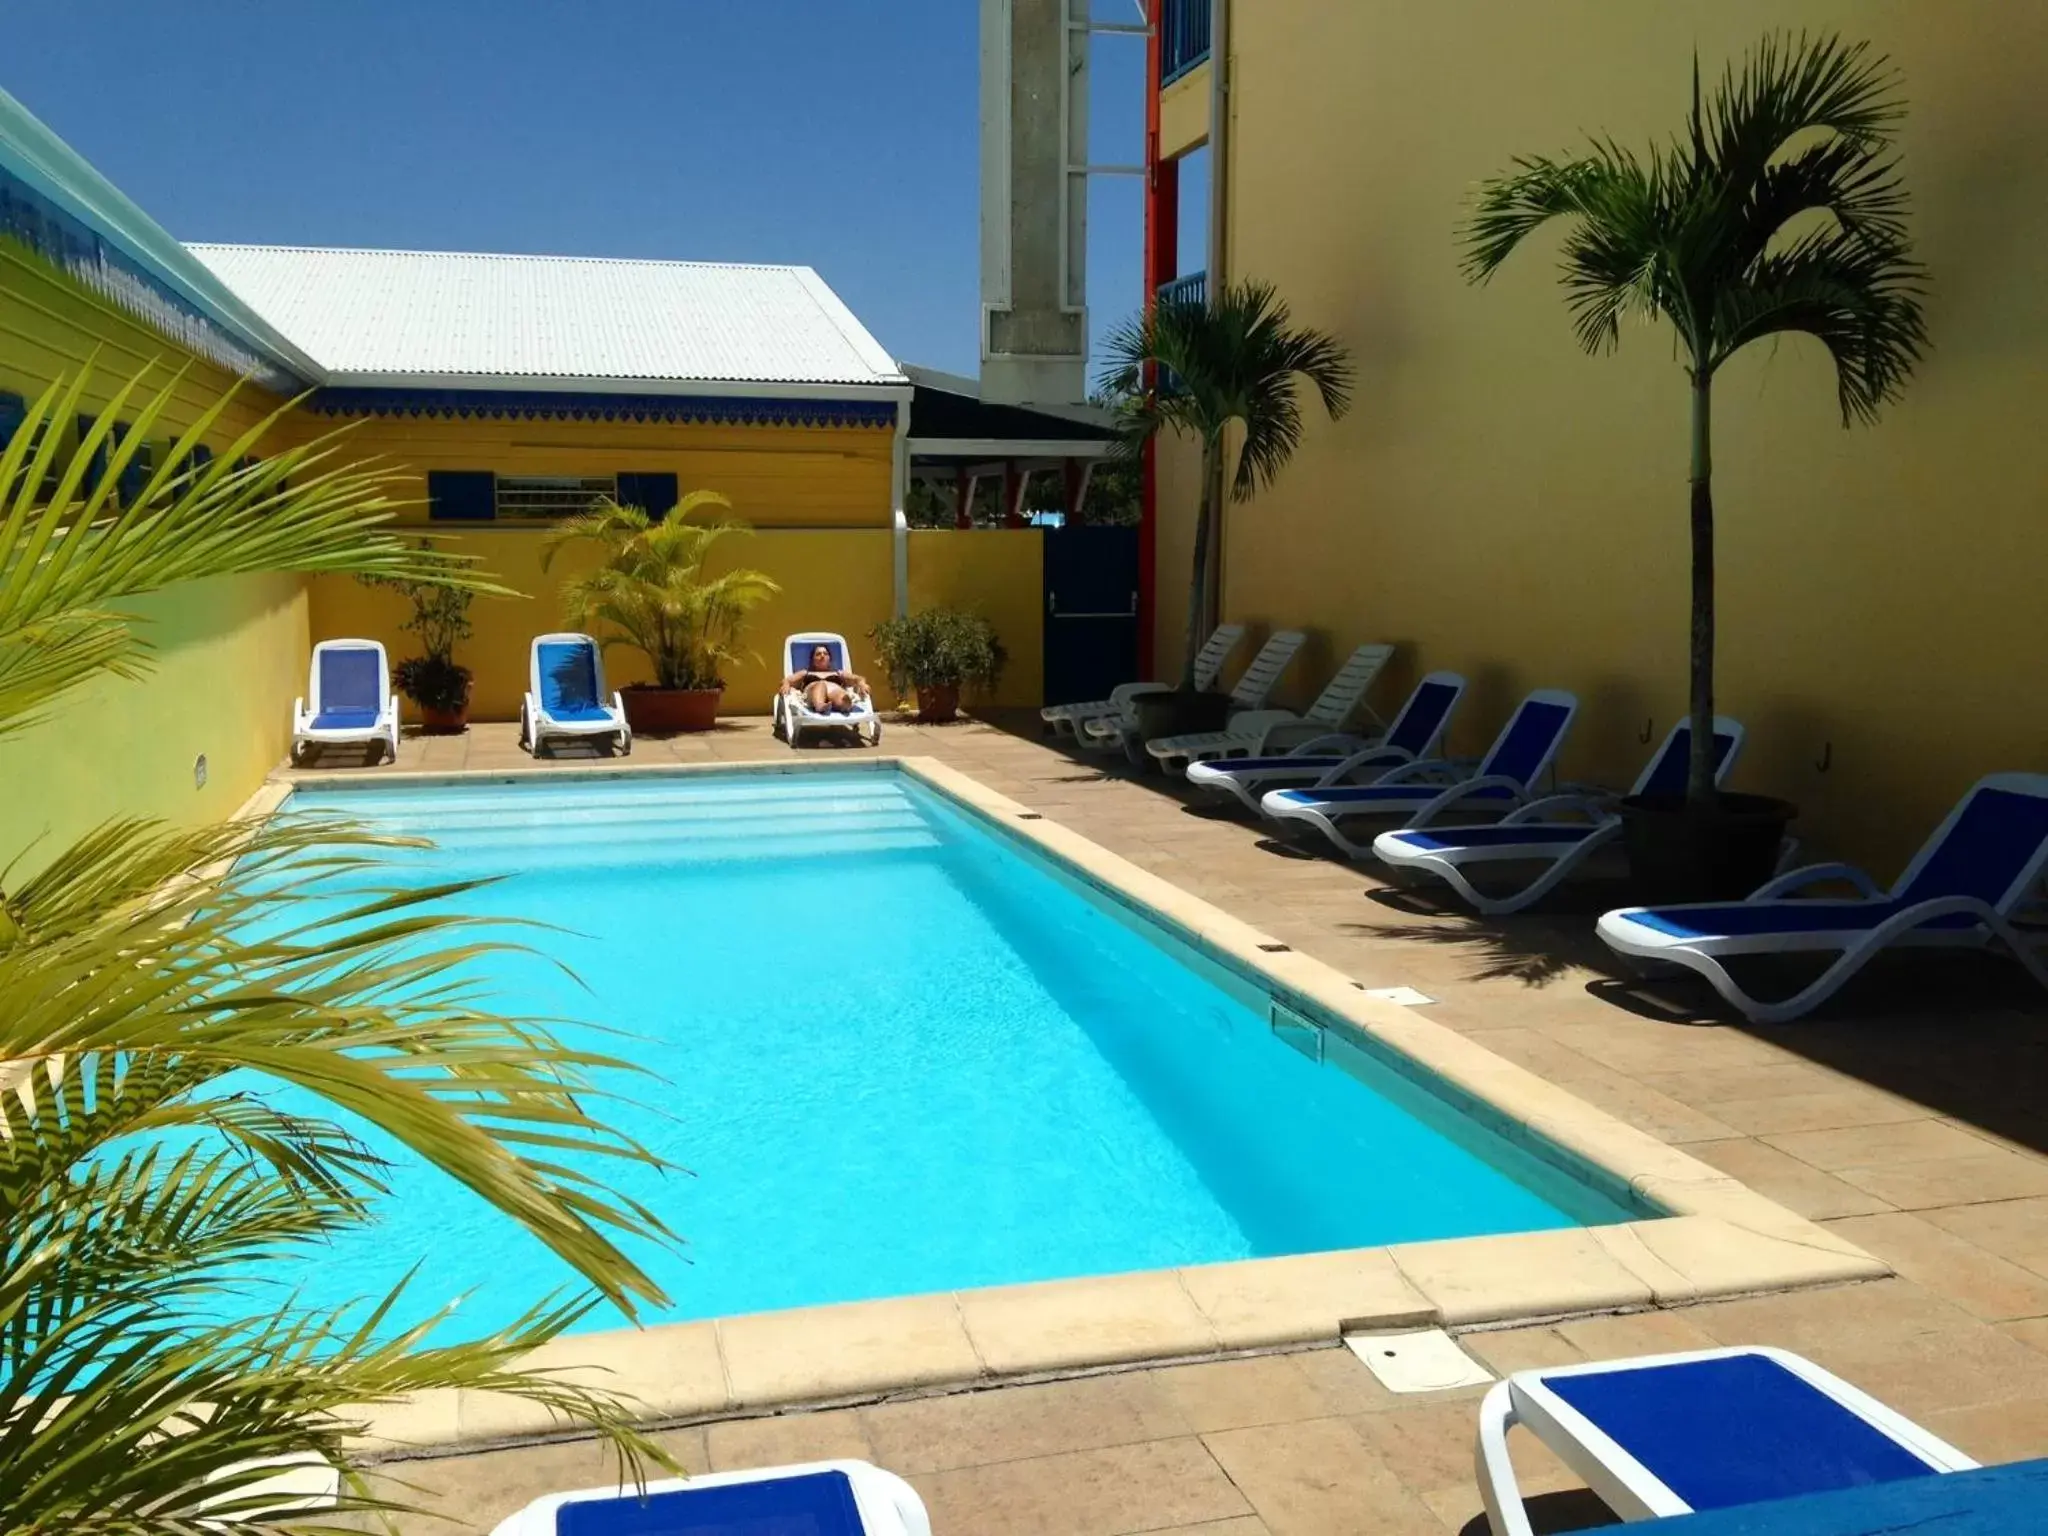 Swimming Pool in Karaibes Hotel